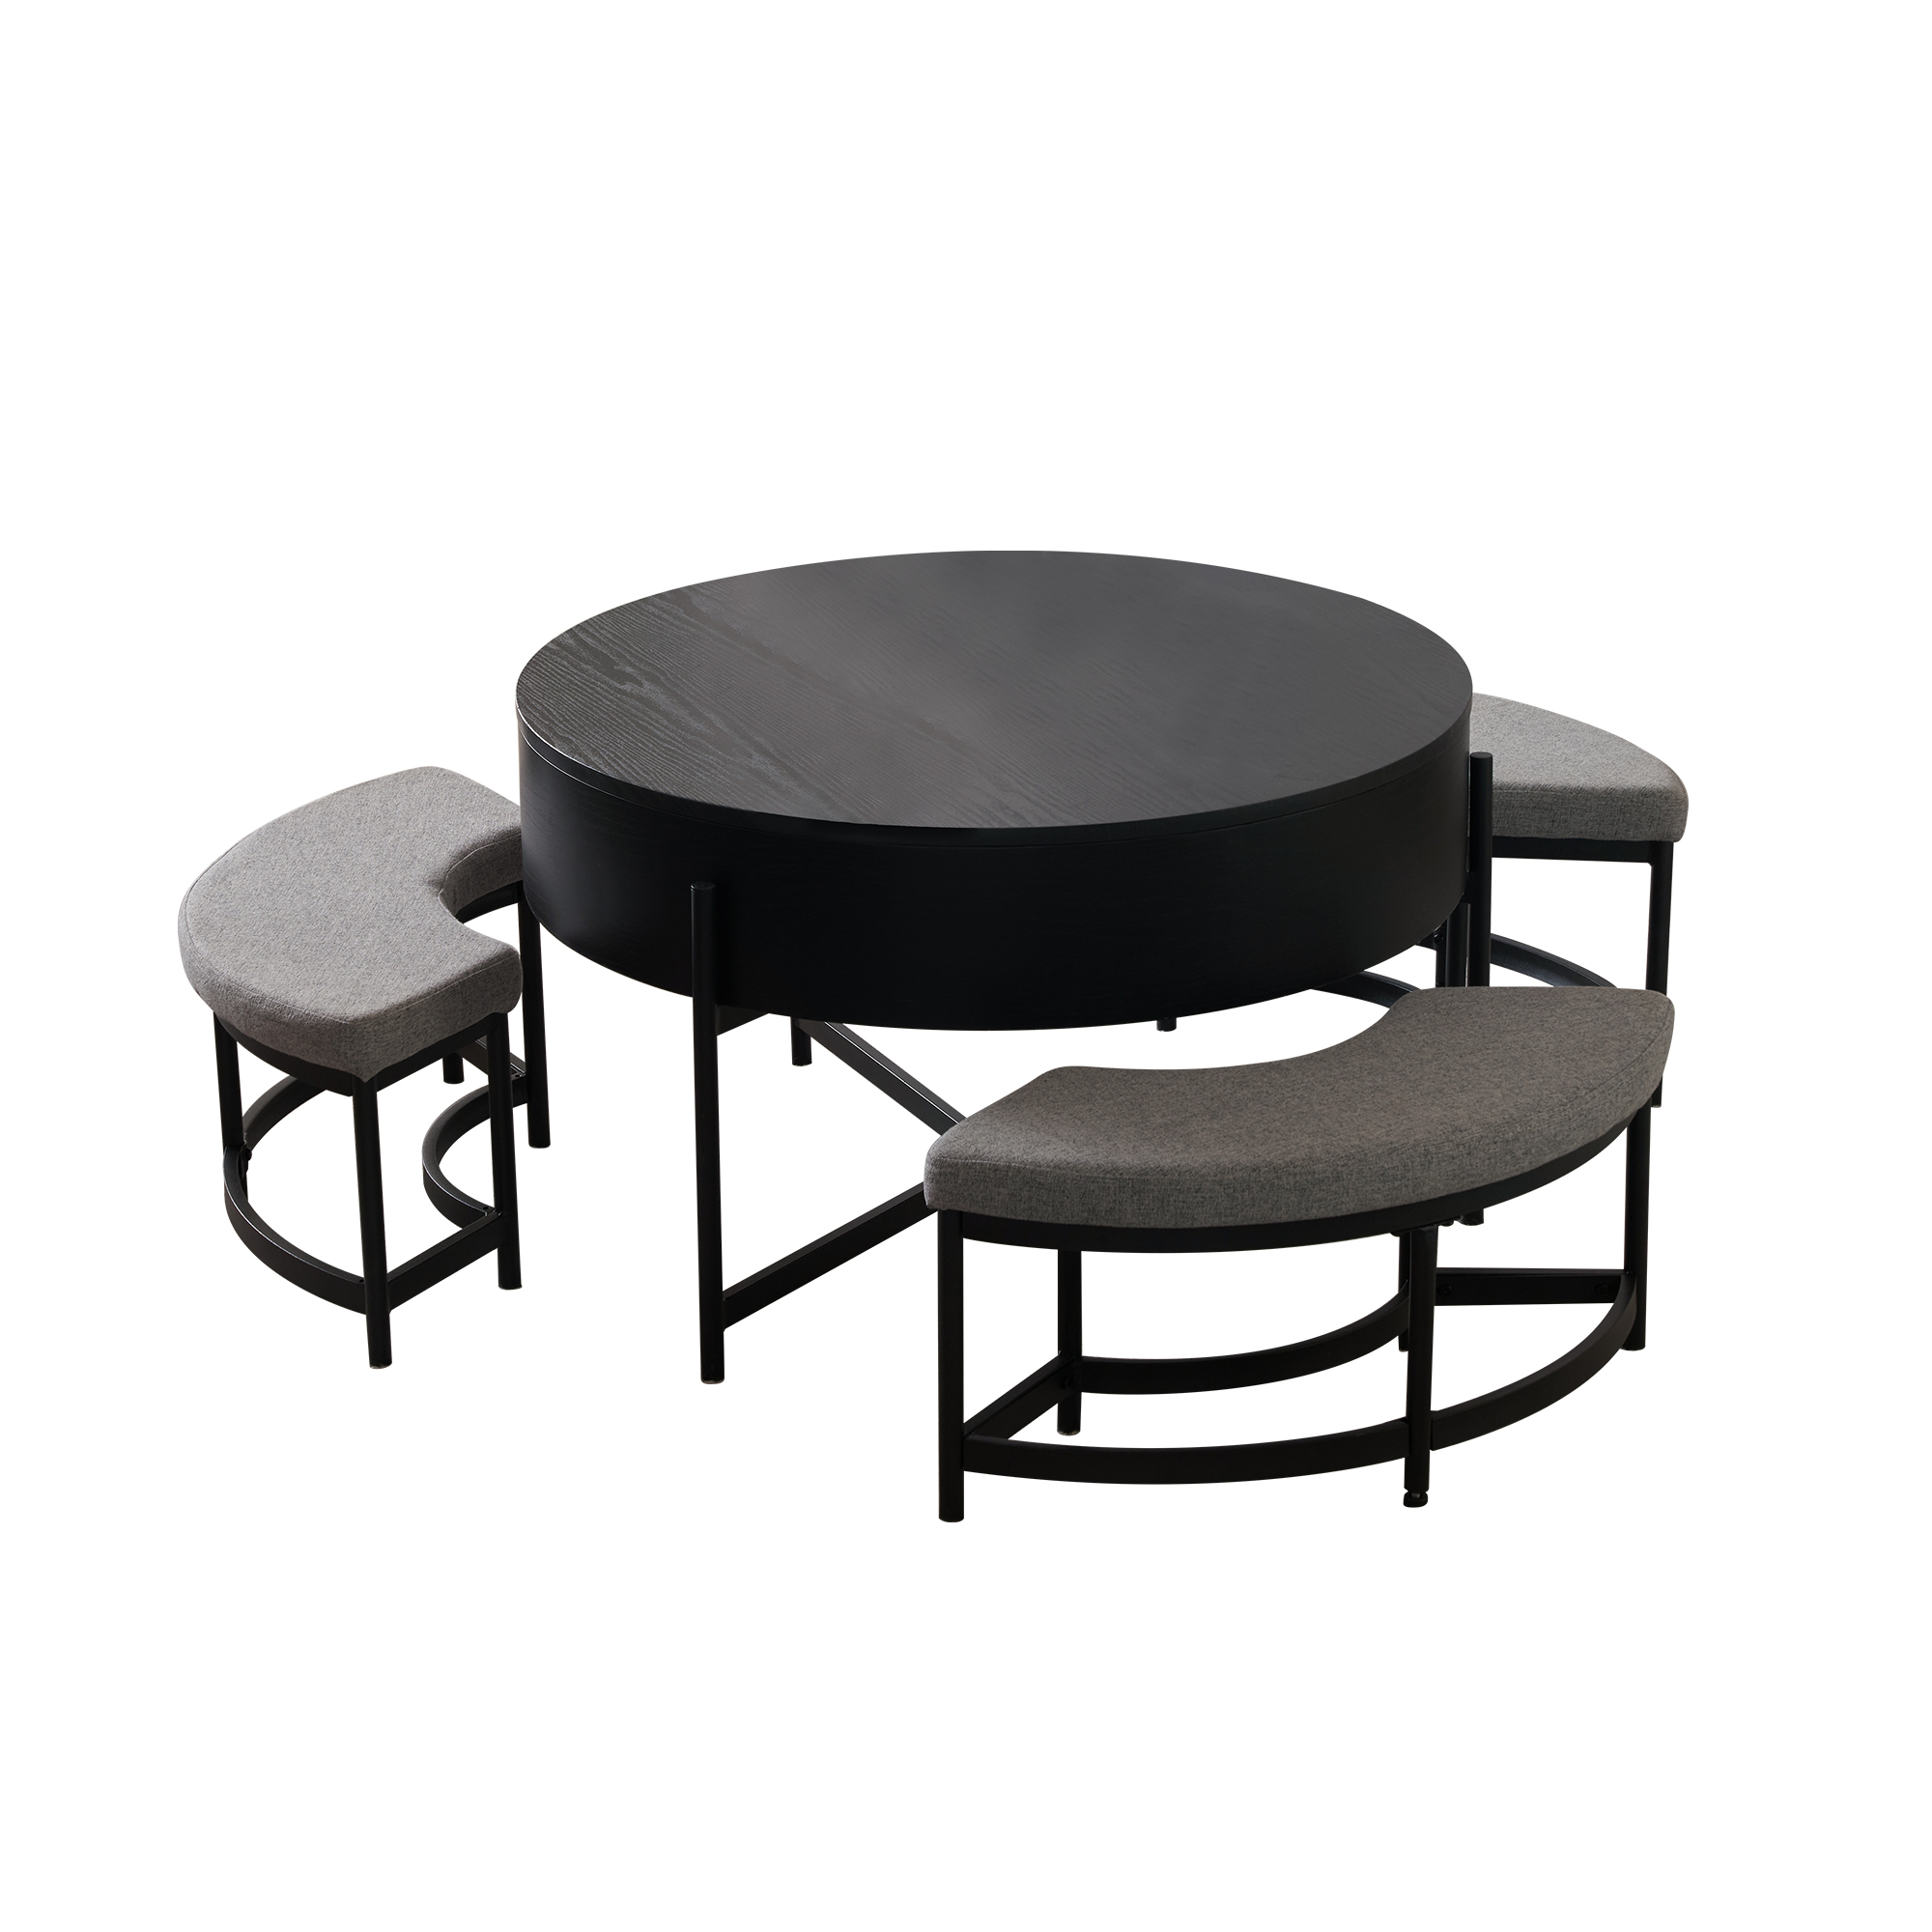 昇降テーブル センターテーブル 丸型 チェア付き 4点セット 3人掛け 収納付き 丸テーブル ダイニングテーブル イス チェア センターテーブルセット  ローテーブル